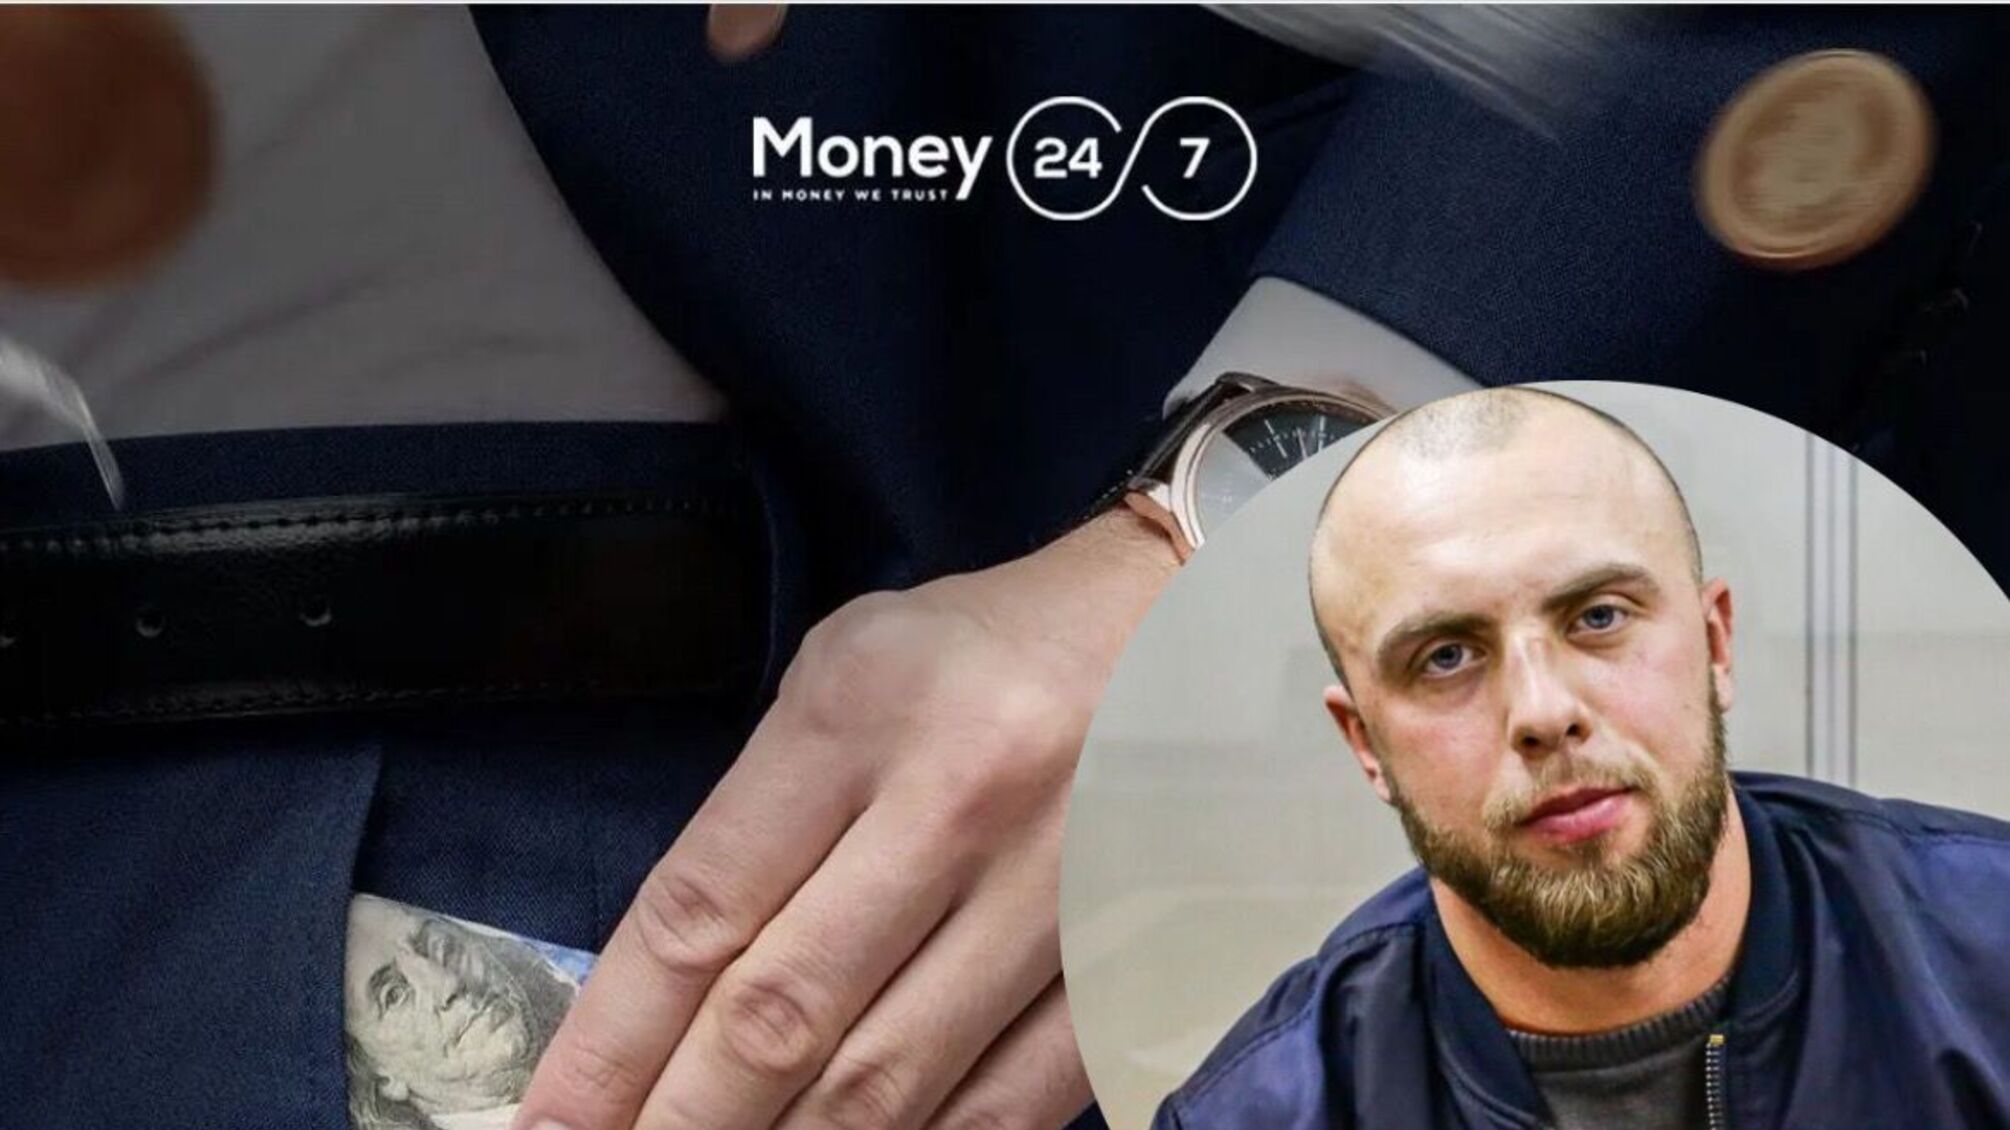 'Вооруженные охранники Money 24/7 ударили журналиста ногой в челюсть', - Кристиан Ударов о драке в столичном обменнике